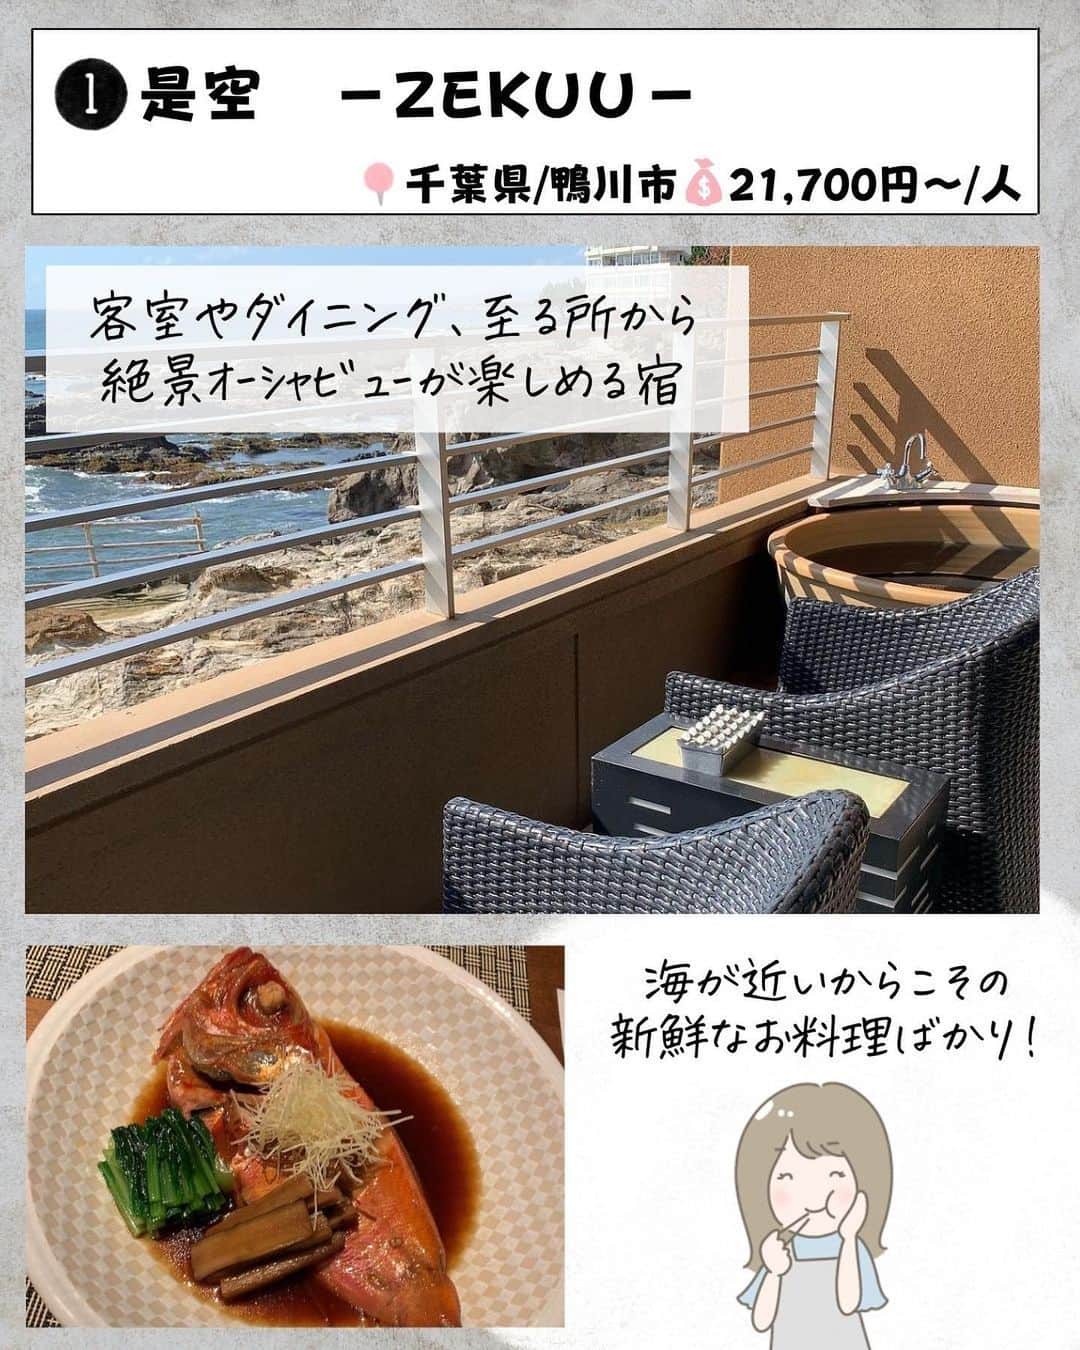 ぴち家さんのインスタグラム写真 - (ぴち家Instagram)「. お得を極めて旅に生きる夫婦、 ぴち家（@travelife_couple）です。 ⁡ 今回は 「カップルでいきたい露天風呂つき宿　関東編」 の特集です。  ゆっくり、のんびり入れる露天風呂って 最高だよね～✨☺️   東京なのに山里にいるような宿や、 大海原を眺めながら、露天風呂に入れる宿。 どれもこれも迷っちゃう！！  今回は二人でゆっくりしたいカップルにオススメの 関東の宿を紹介するよ～✨   「いってみた～い！」 そんなホテルがあったらコメントで教えてね☺️ ✨   ⁡ ※ホテル価格は楽天トラベルで検索した最安値を記載しています。 時期により変動があるため参考程度としてください！ ⁡ 【𝕚𝕟𝕗𝕠𝕣𝕞𝕒𝕥𝕚𝕠𝕟𓏗𓏗】 ❶ 是空 －ZEKUU－ 📍千葉県鴨川市太海浜24-1 （写真:@mika.travel.insta様より）  ❷ 由縁別邸 東京代田 📍東京都世田谷区代田2-31-26 ⁡（写真:@yuuki__ono様より）  ❸ ゆがわら風雅 📍神奈川県足柄下郡湯河原町宮上261 （写真:@fuwafuwa_koharubiyori様より）  ❹ 別邸 海と森 📍千葉県銚子市犬吠埼10292-1 ⁡（写真:mayumi_2038様より）  ➎ あたら夜 西伊豆 📍静岡県伊豆市土肥324 （写真:@___a99y様より）  ❻ あらたし みなかみ 📍群馬県利根郡みなかみ町湯原740-3 ⁡（写真:@ayakan555様より）  ➐ 別邸 翠風荘 慶山 📍茨城県行方市浜2796-1 （写真:@sunupi127様より）  ーーーーーーーーーーーーーーーーーー✽ ⁡ ぴち家（@travelife_couple）って？ ⁡ バン🚐で旅してホテルやスポット巡り！ お得旅行が大好きな夫婦です。 ⁡ ✔旅行先やホテル ✔観光スポット・グルメまとめ ✔旅費を作るためのお金の話を発信中𓂃𓈒𓏸 ⁡ ⁡ また本アカウント以外にも、以下を運営しております。 少しでも役立ちそう、応援してもいいと思って 頂ける方はフォローよろしくお願いしますˎˊ˗ ⁡ 📷日常・写真メインの旅行情報 →@travelife_diary （フォロワー4万超） ⁡ 🔰初心者必見のお金・投資情報 →@yuki_moneylife （フォロワー11万超） ⁡ 🎥旅行ムービー発信のTiktok → @ぴち家（フォロワー2.5万超） ⁡ 【テーマ】 「旅行をもっと身近に✈️」 これまで厳しい状況が続いてきた旅行・飲食業界を盛り上げたい！ より多くの人にワクワクする旅行先を知って もらえるよう、またお得に旅行が出来るよう、 夫婦二人で発信を頑張っています。 　 【お願い】 応援して頂けるフォロワーの皆様、及び 取材させて頂いている企業様にはいつも感謝しております！🙇‍♂️🙇‍♀️ お仕事依頼も承っておりますので、 応援頂ける企業・自治体様はぜひ プロフィールのお問合せよりご連絡お願いします。 ⁡ ぴち家(@travelife_couple) ⁡ ✽ーーーーーーーーーーーーーーーーー ⁡ #是空 #由縁別邸代田 #ゆがわら風雅 #別邸海と森 #あたら夜西伊豆 #あらたしみなかみ #別邸 翠風荘 慶山 #客室露天風呂 #ぴちホテルまとめ」7月18日 20時05分 - travelife_couple